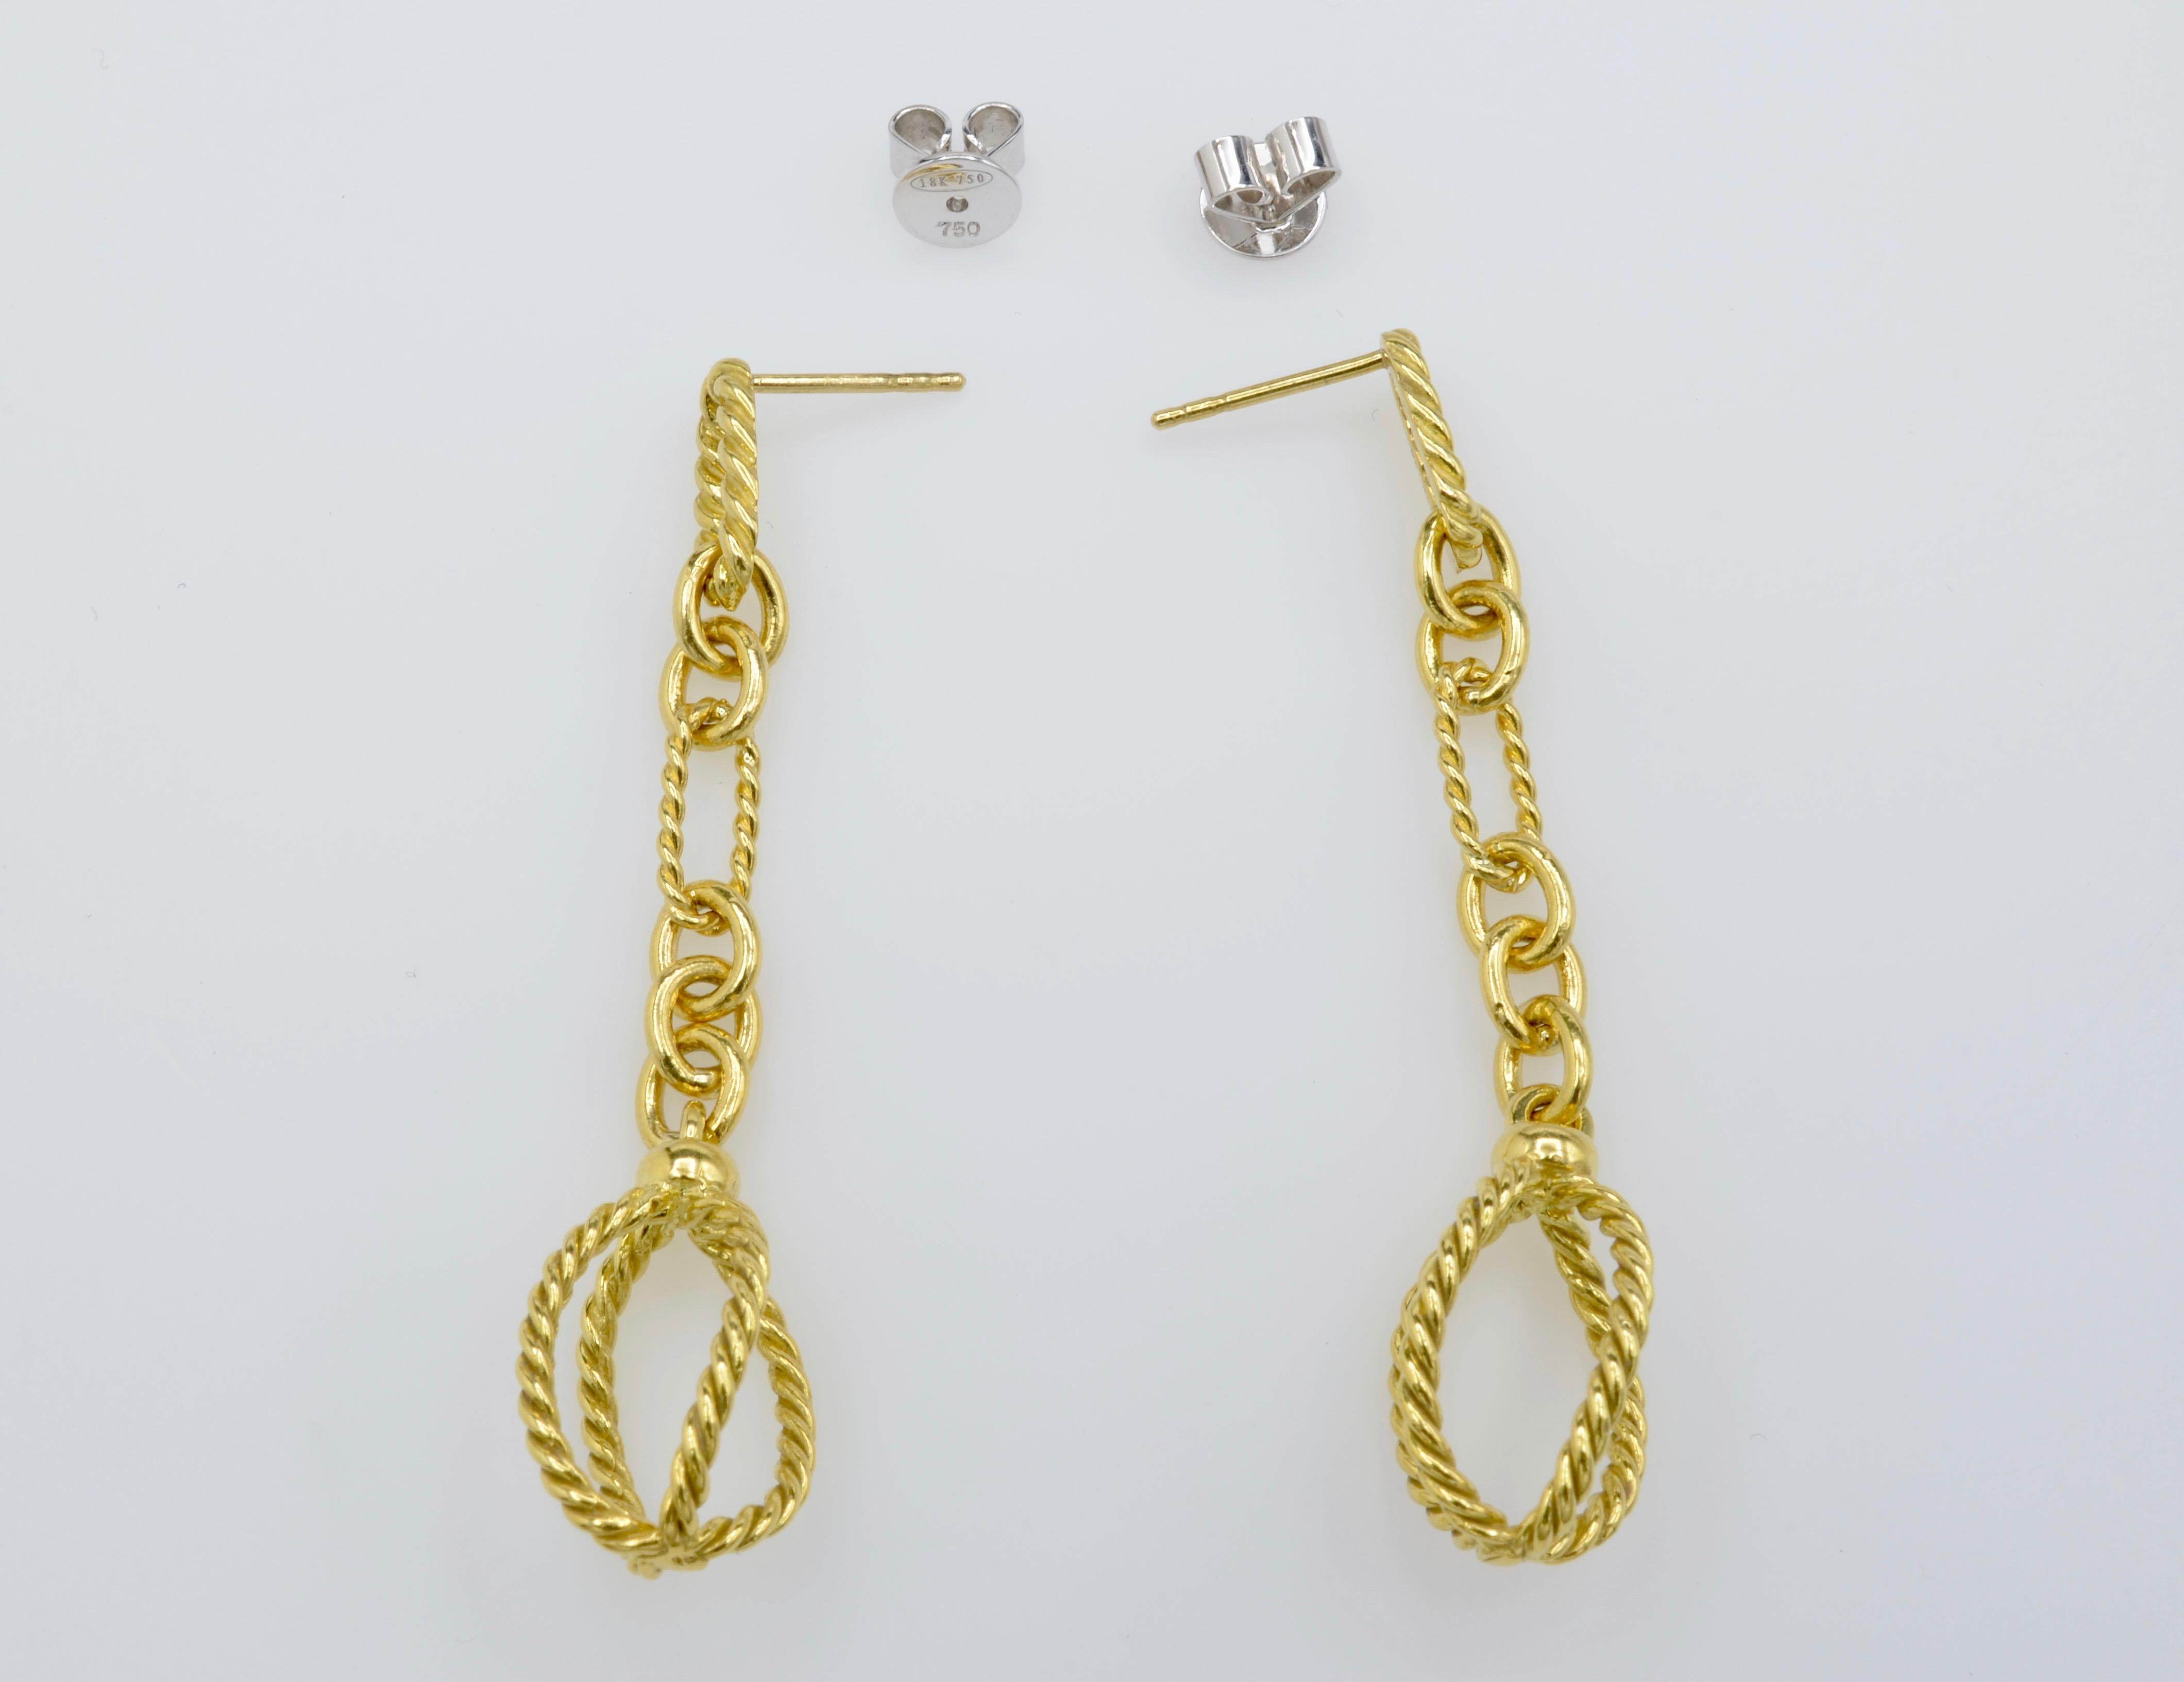 David Yurman Dangling Gold Chain Earrings in 18 Karat Yellow Gold 1